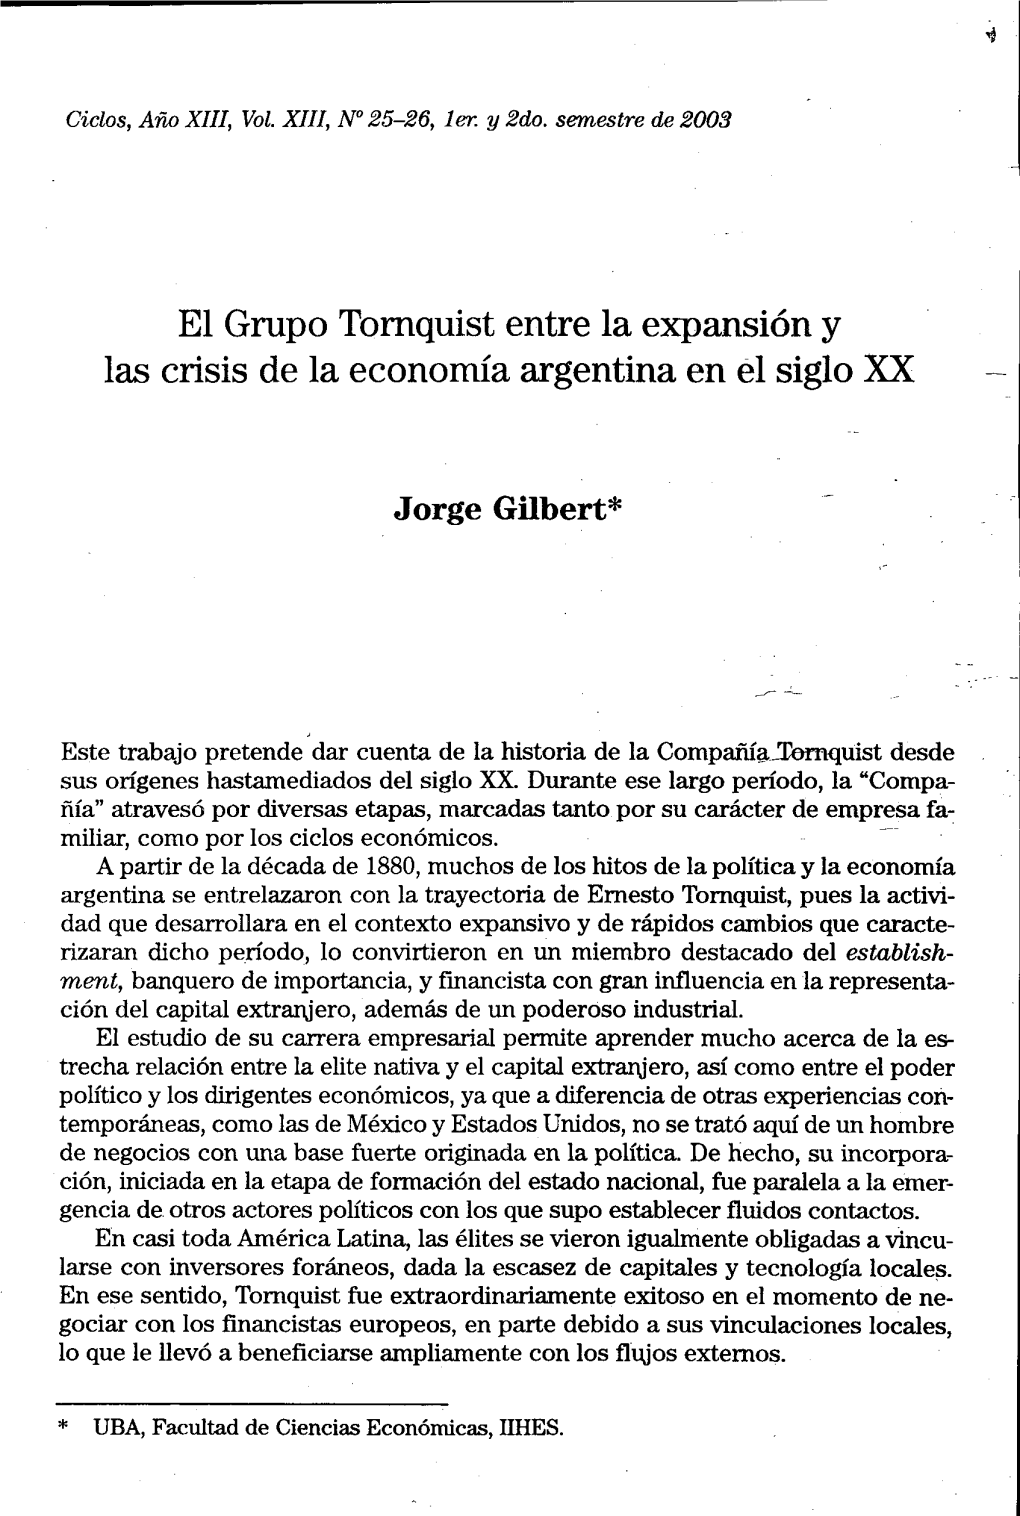 El Grupo Tornquist Entre La Expansión Y Las Crisis De La Economía Argentina En El Siglo :Xx